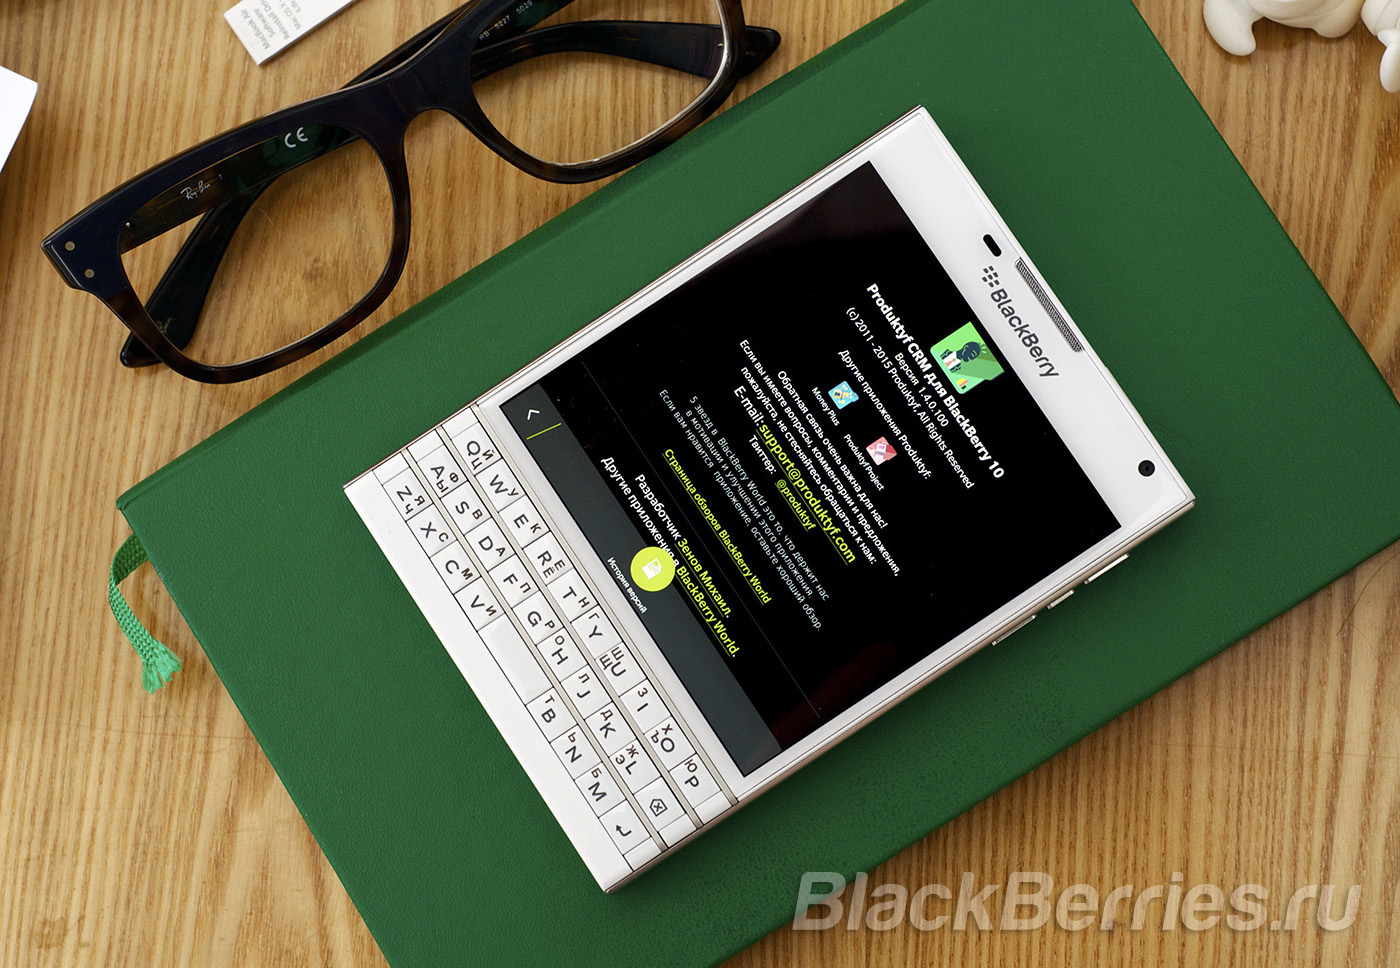 BlackBerry-Passport-App-1